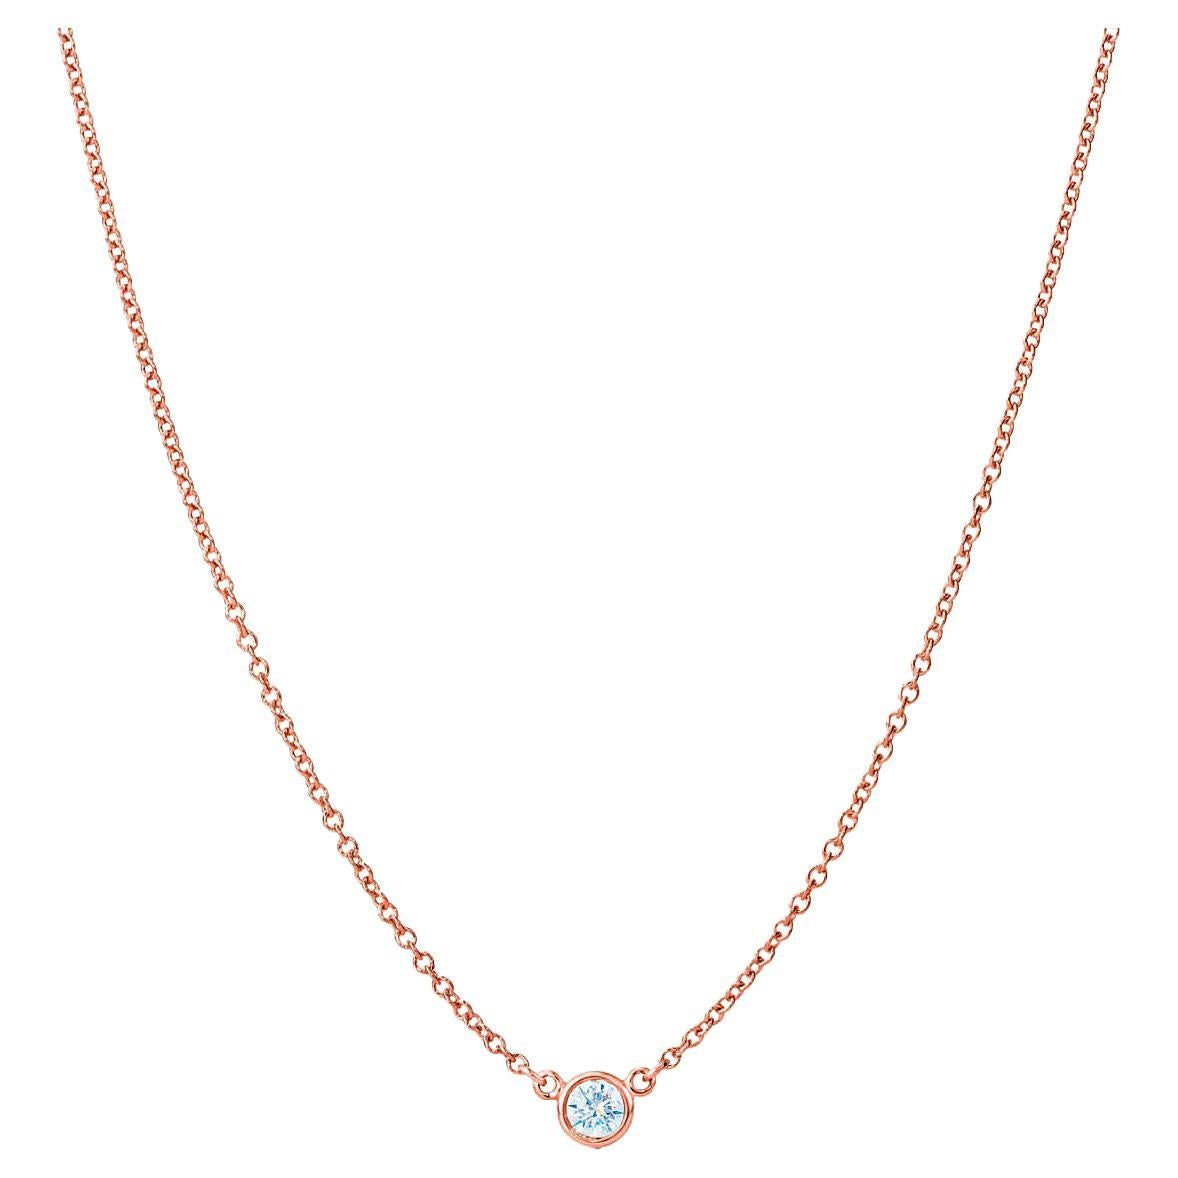 Suzy Levian 0.25 Carat White Diamond 14 Karat Rose Gold Solitaire Necklace